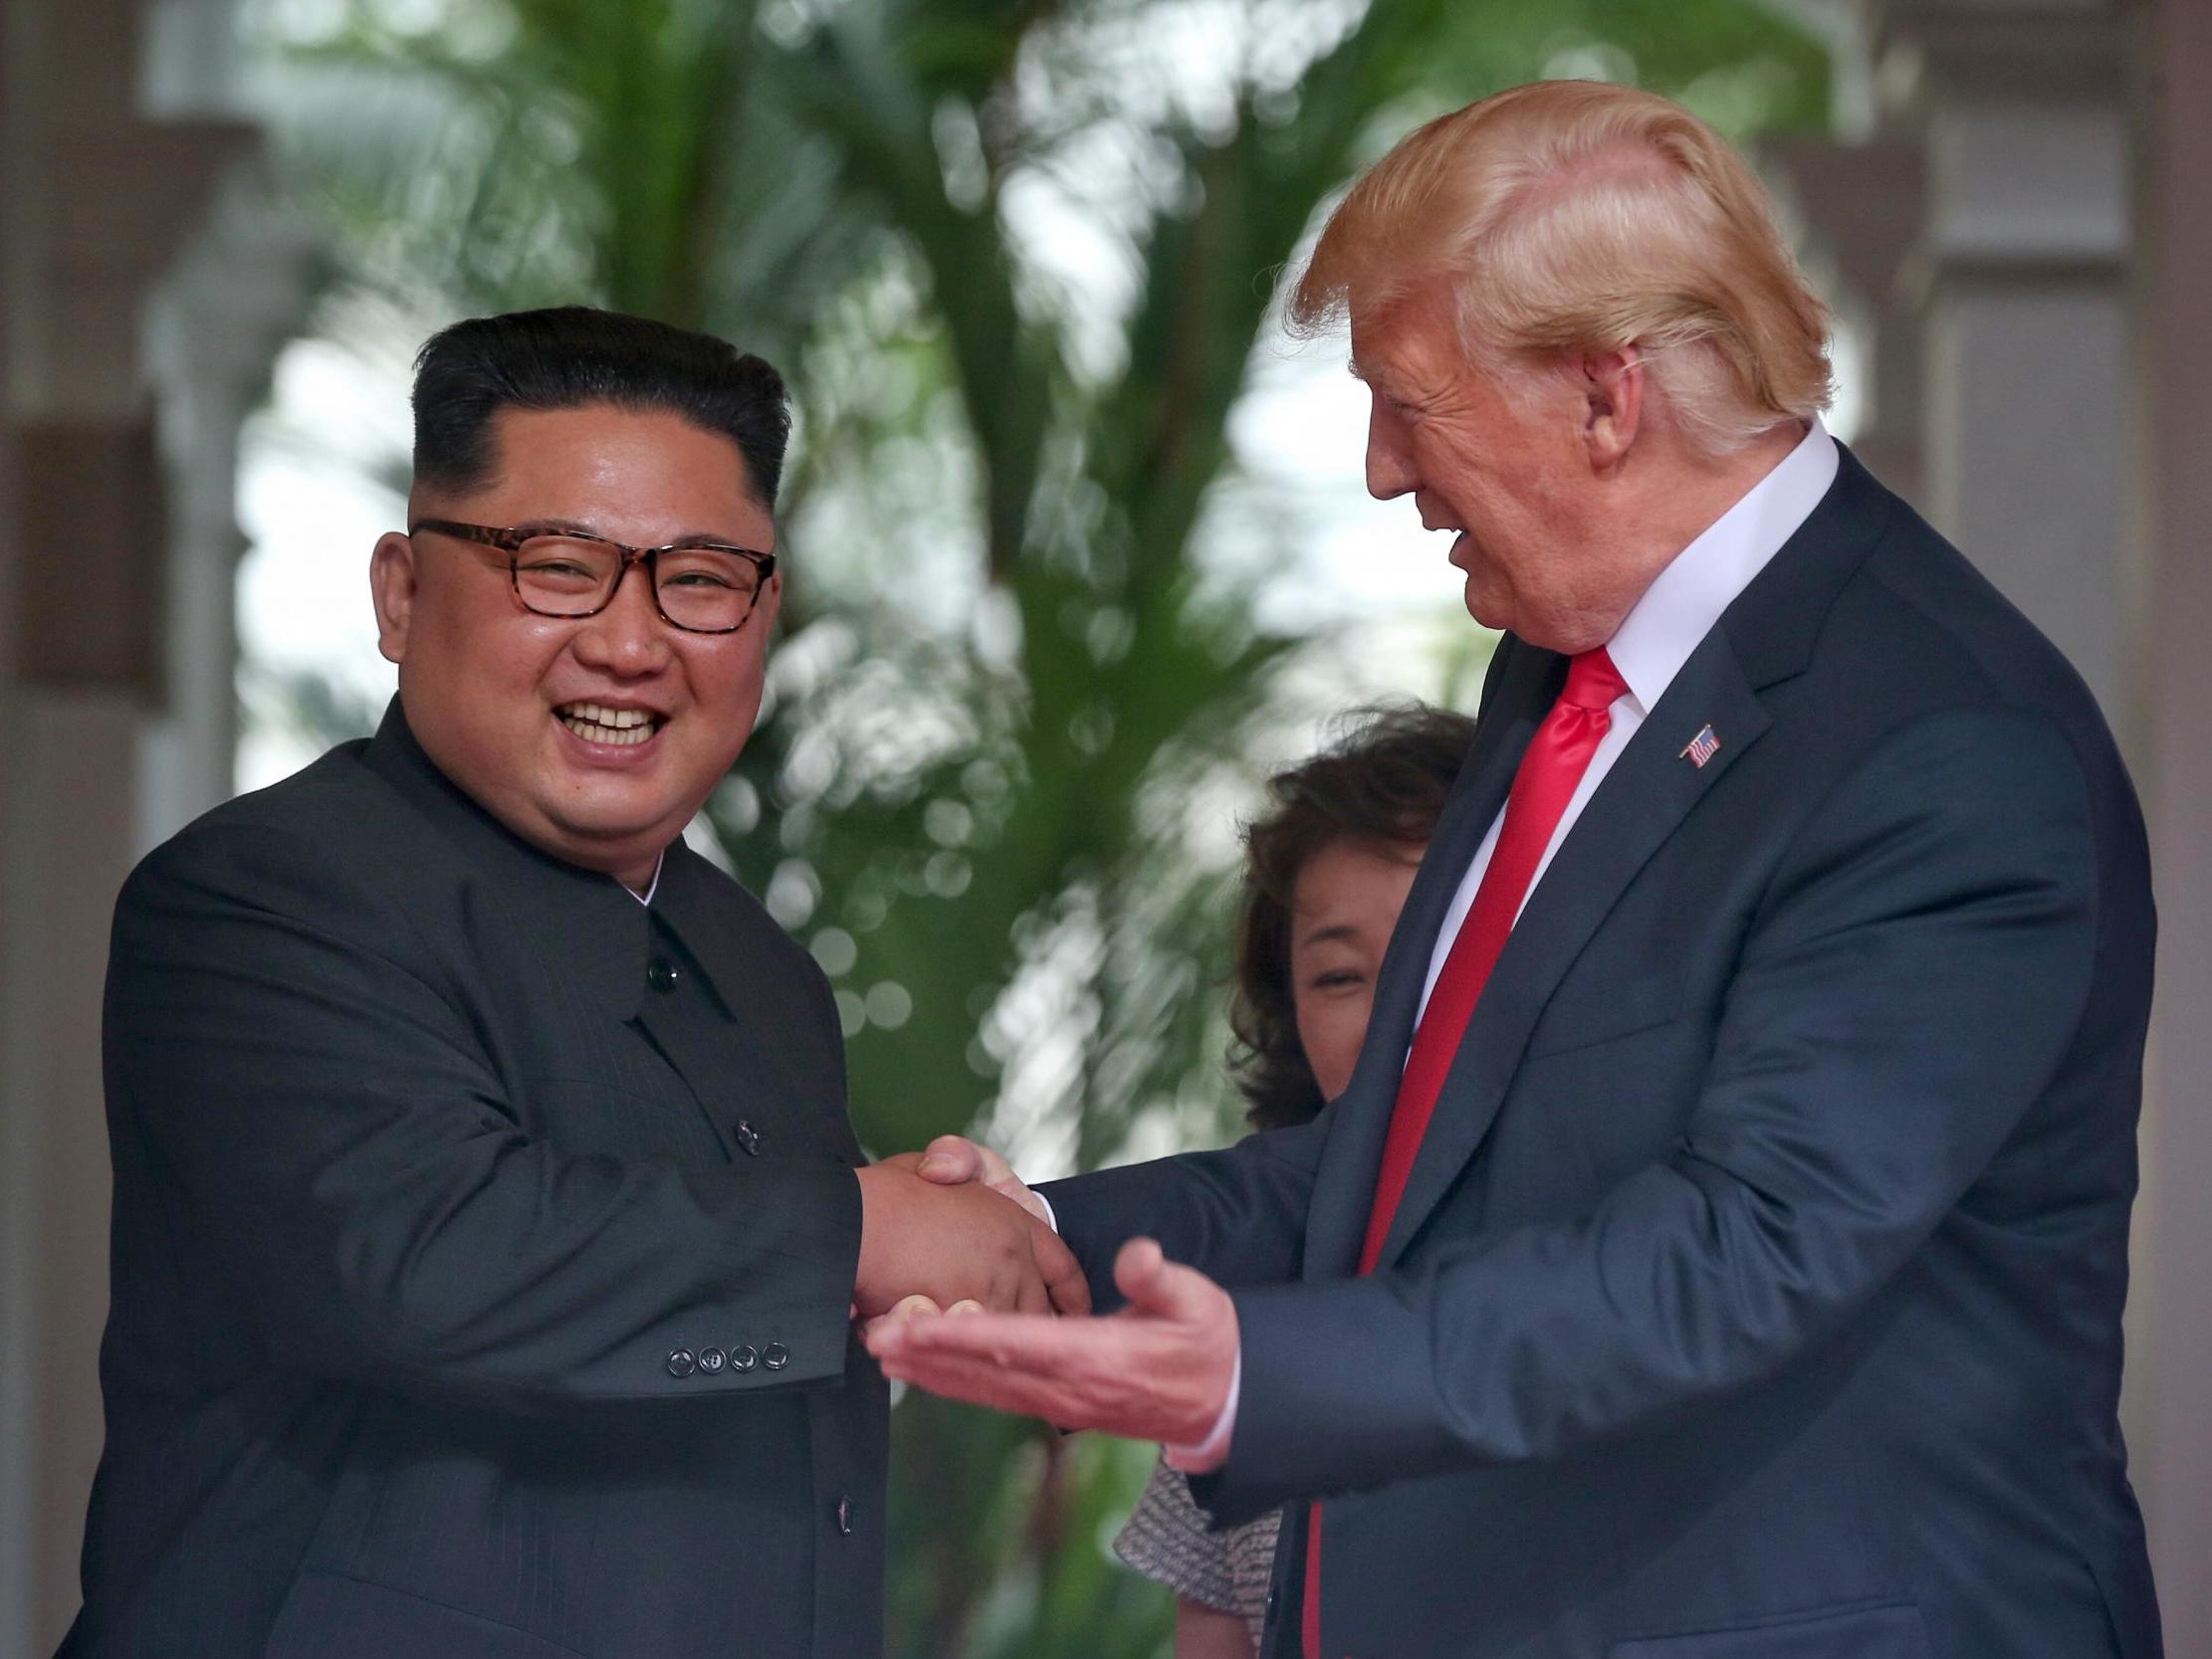 El líder norcoreano, Kim Jong-un, le da la mano al presidente de Estados Unidos, Donald Trump, durante su histórica encuentro entre Estados Unidos y la RPDC